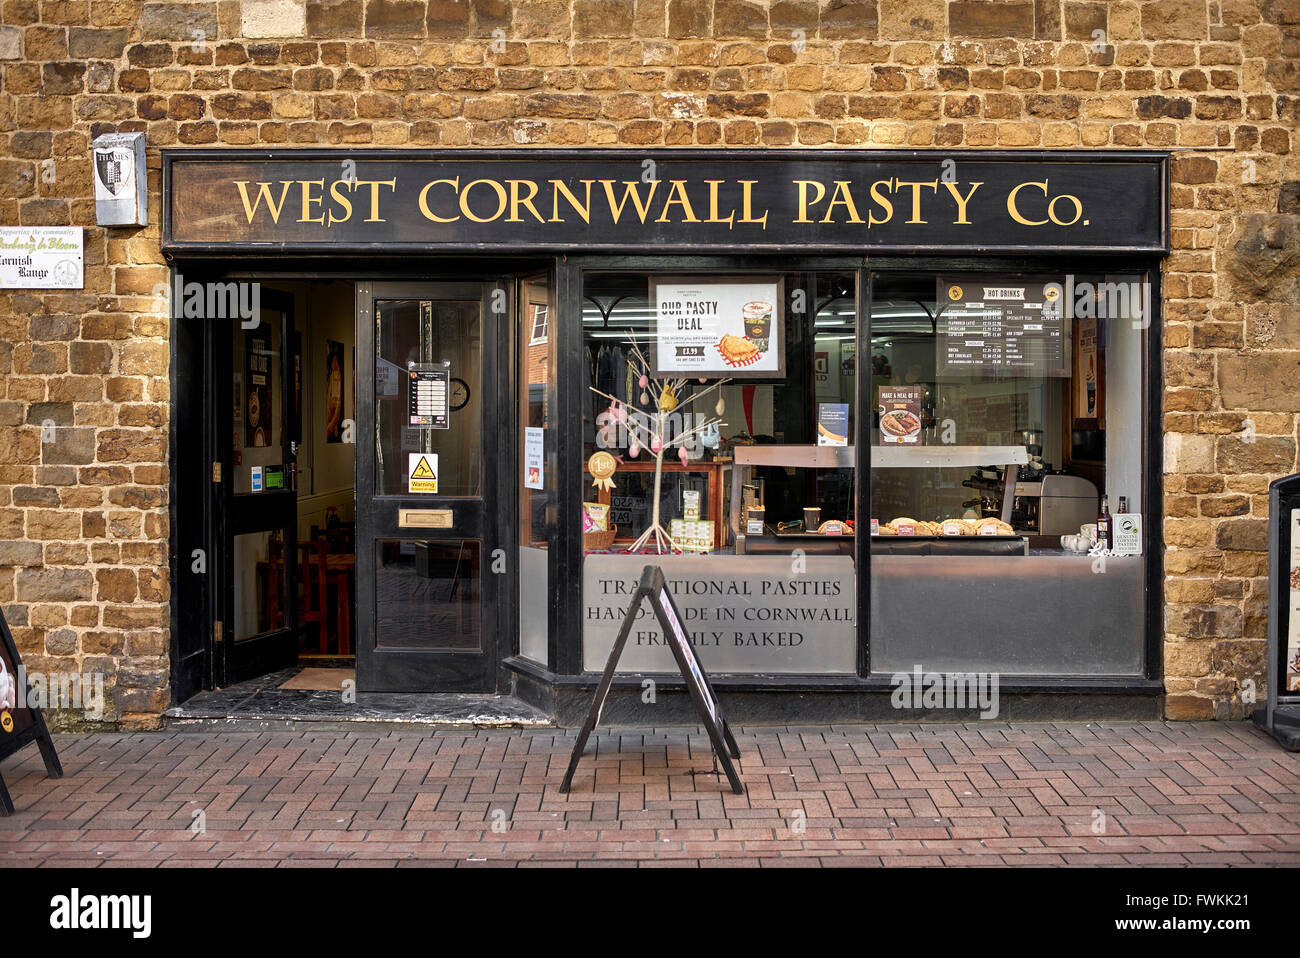 West Cornwall Pasty Co. Cafe of Cornish Pasty bakery, Parsons Street Banbury Oxfordshire England UK Stock Photo